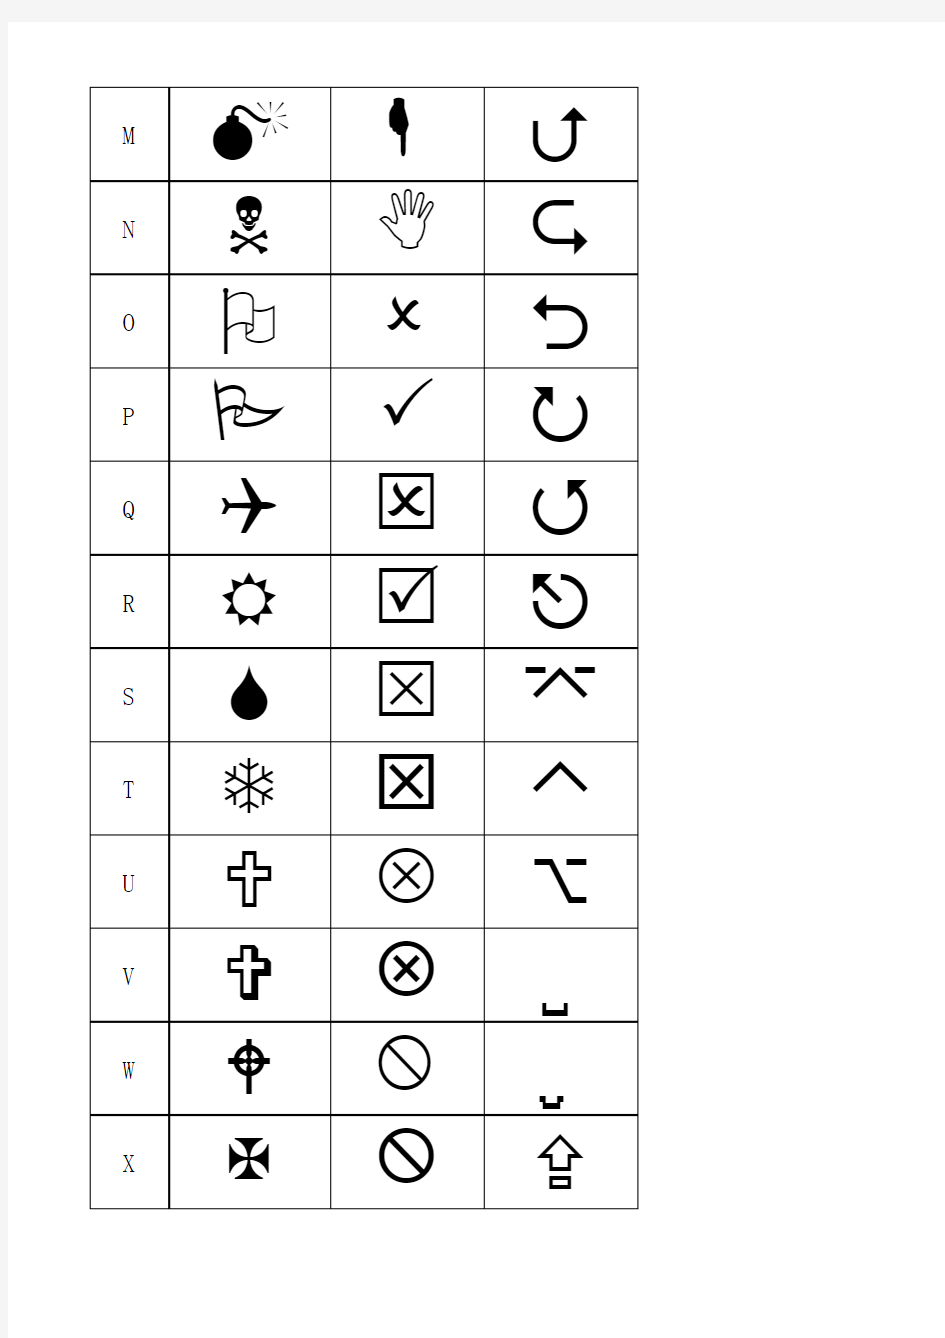 wingding字体特殊符号与键盘字母相对应位置